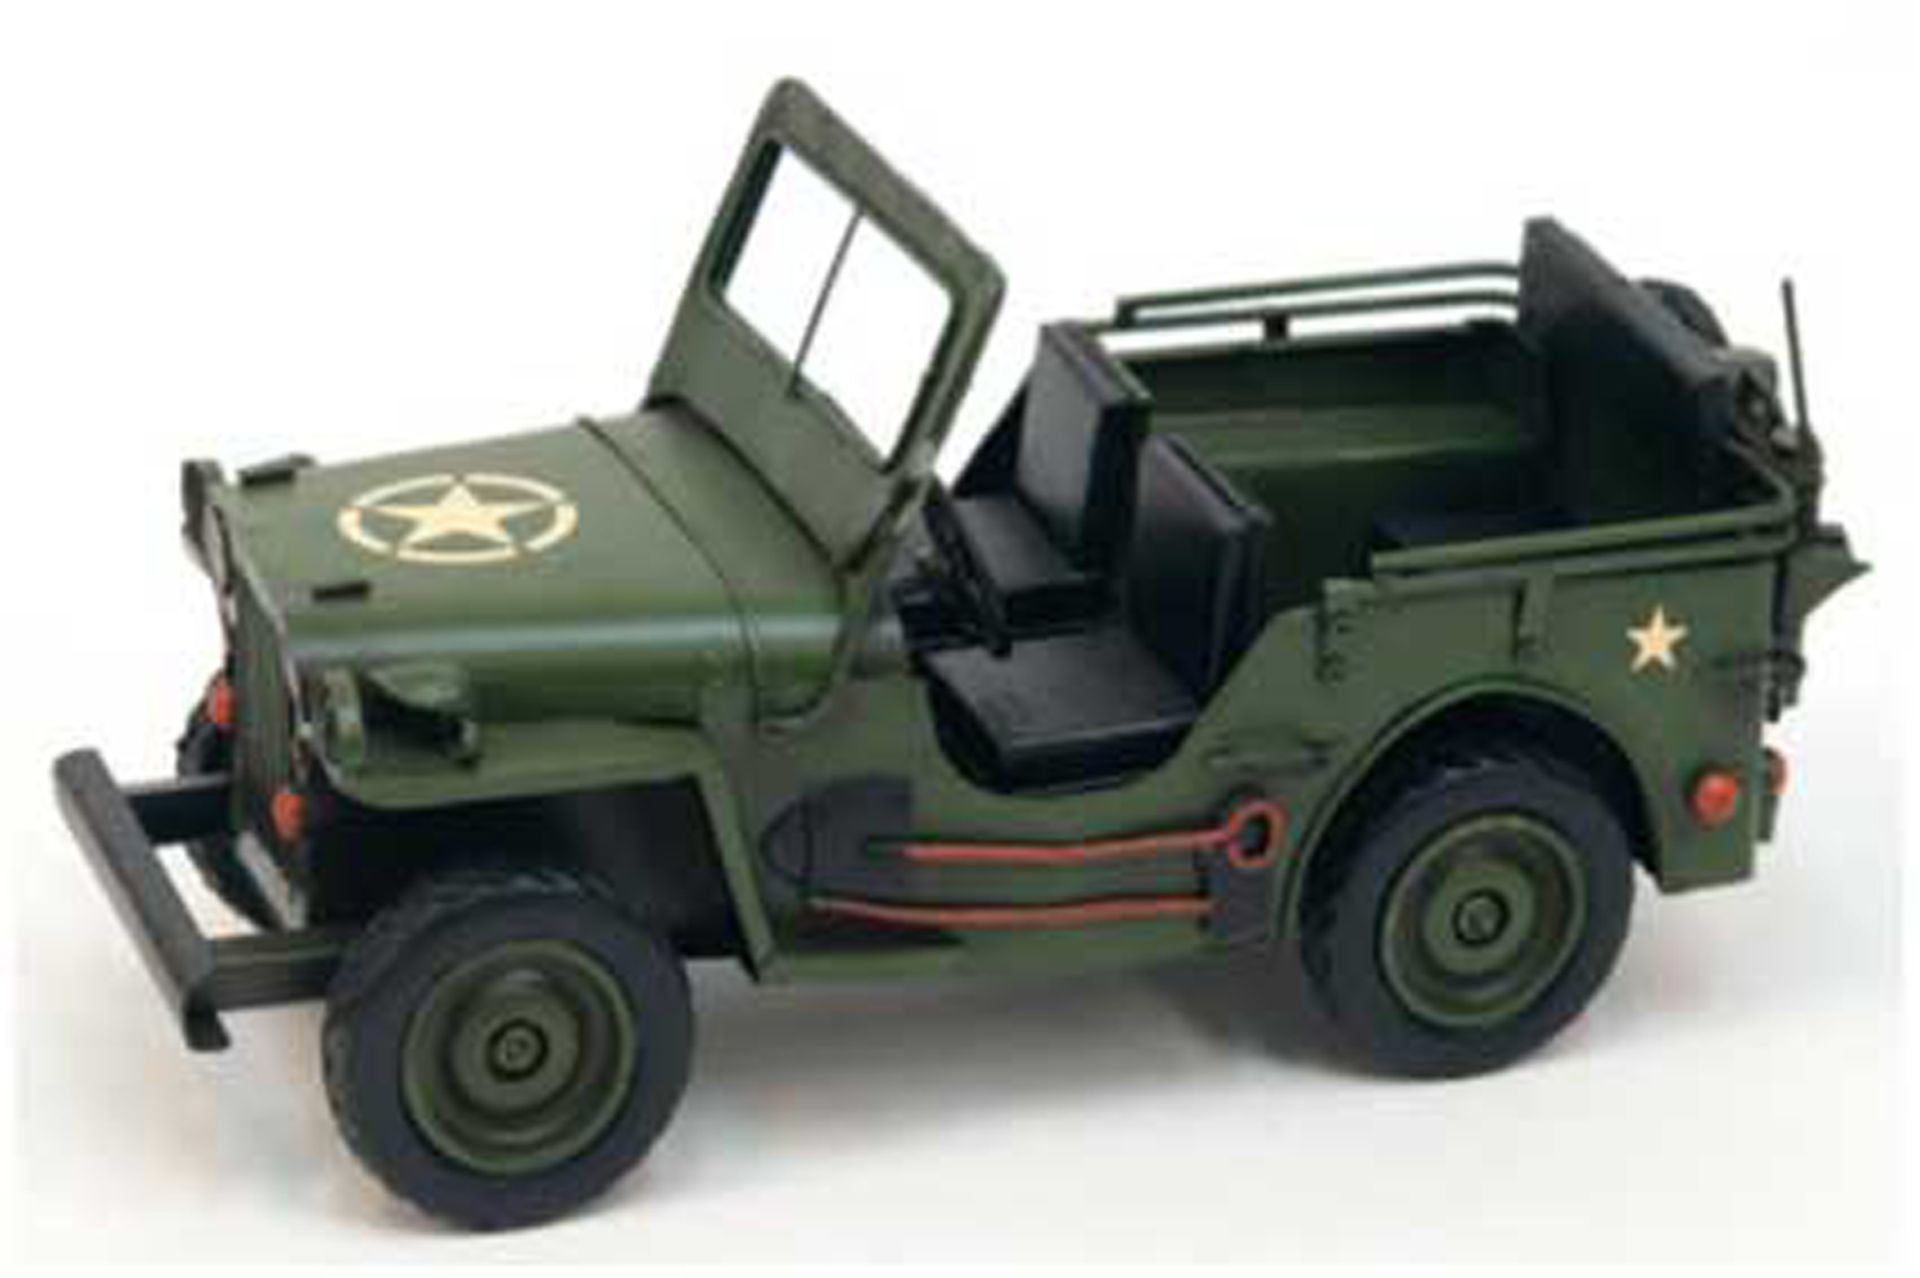 Modellauto "Jeep", USA Army, 2. WK, Blech, im Boden kl. Löcher, Gebrauchspuren, 15x29x13 cm